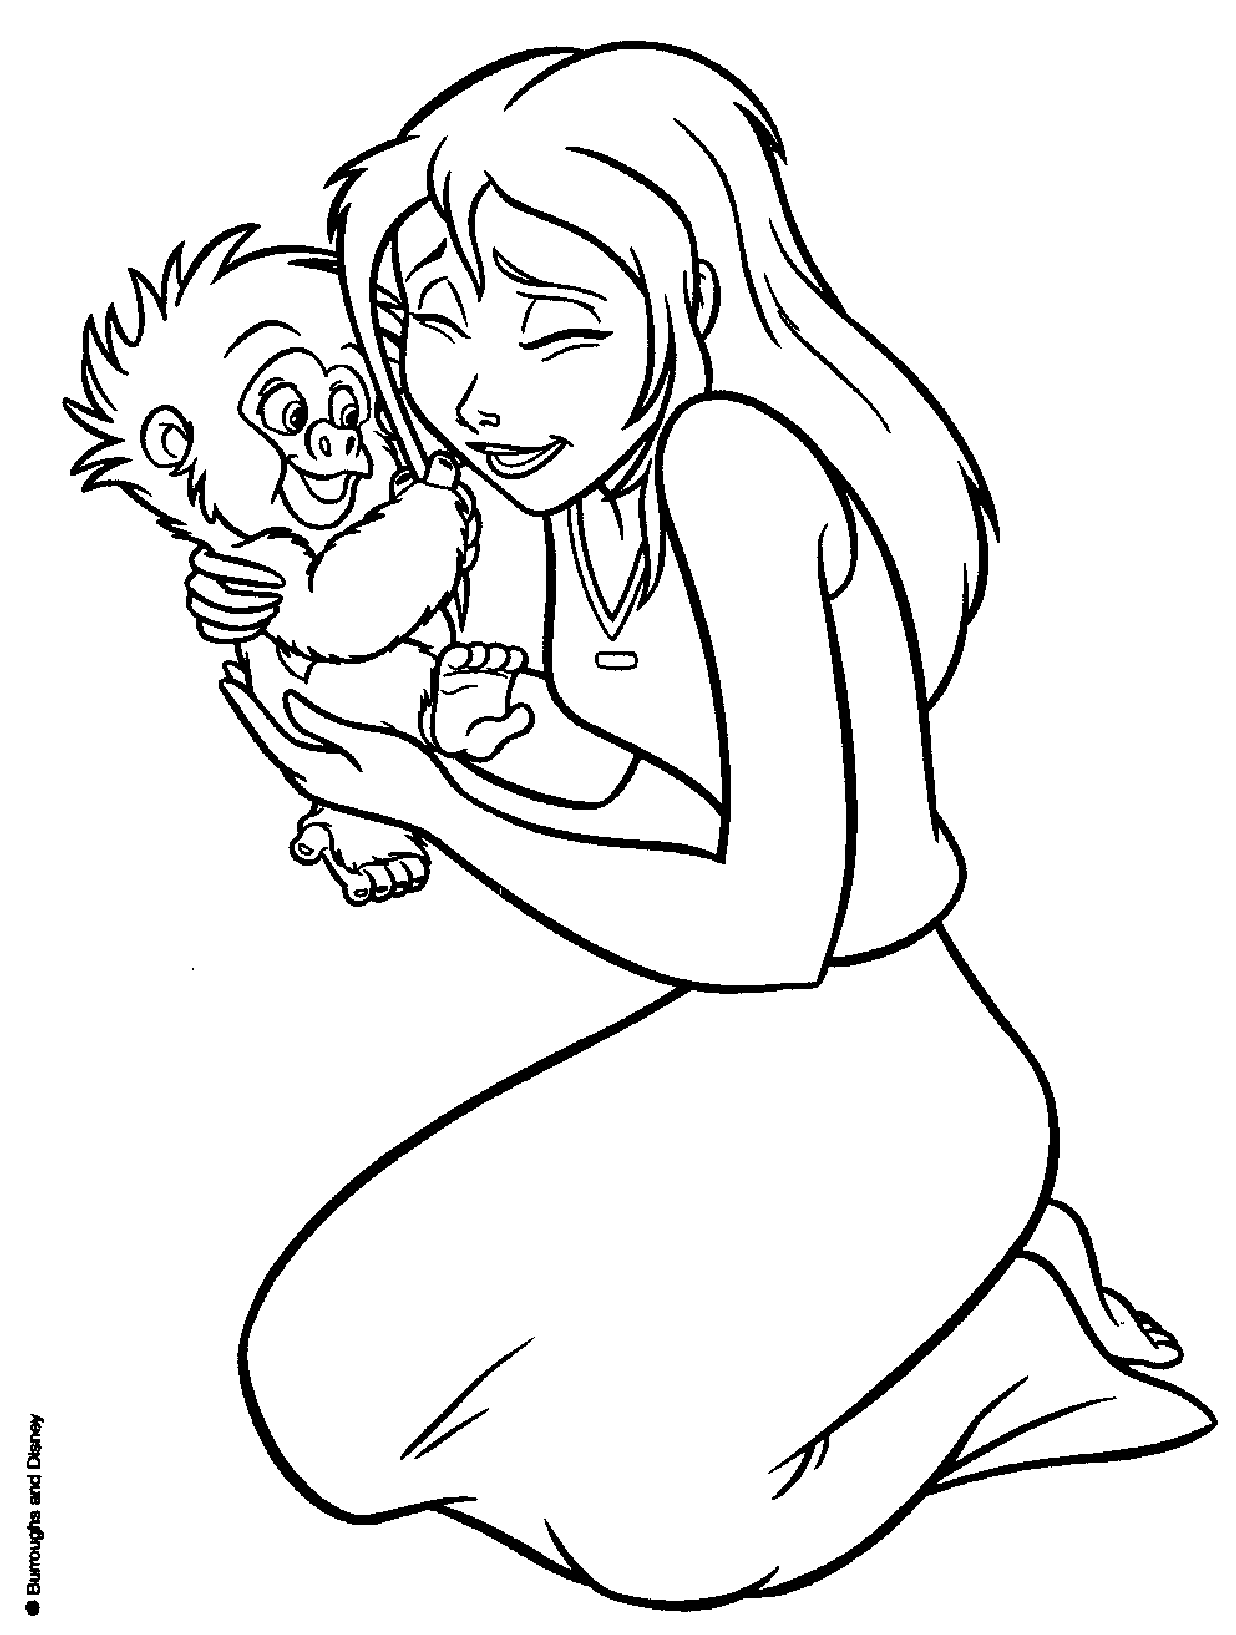 Jane com um macaquinho bebé